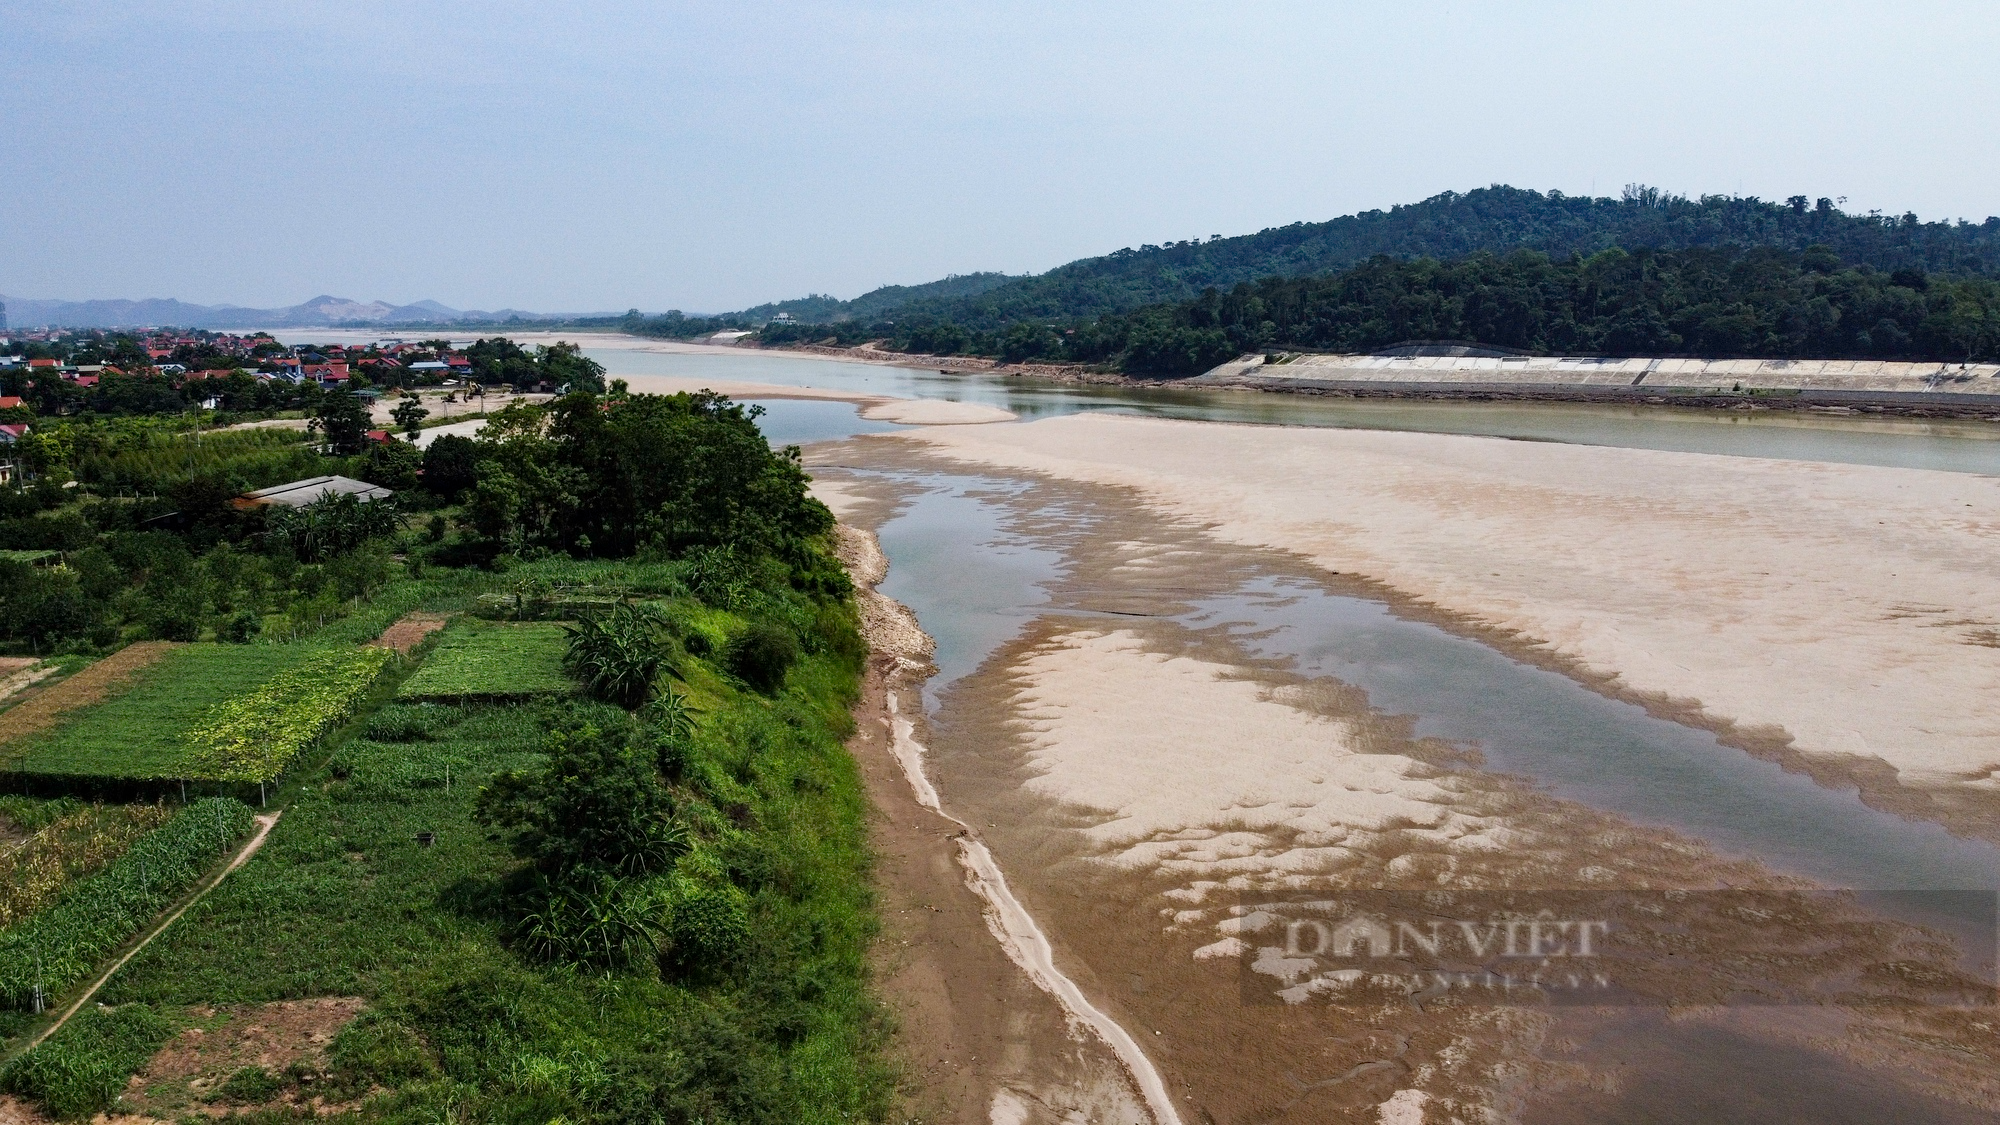 Nước sông Đà cạn đột ngột, người nuôi cá lồng thiệt hại hàng tỷ đồng - Ảnh 9.